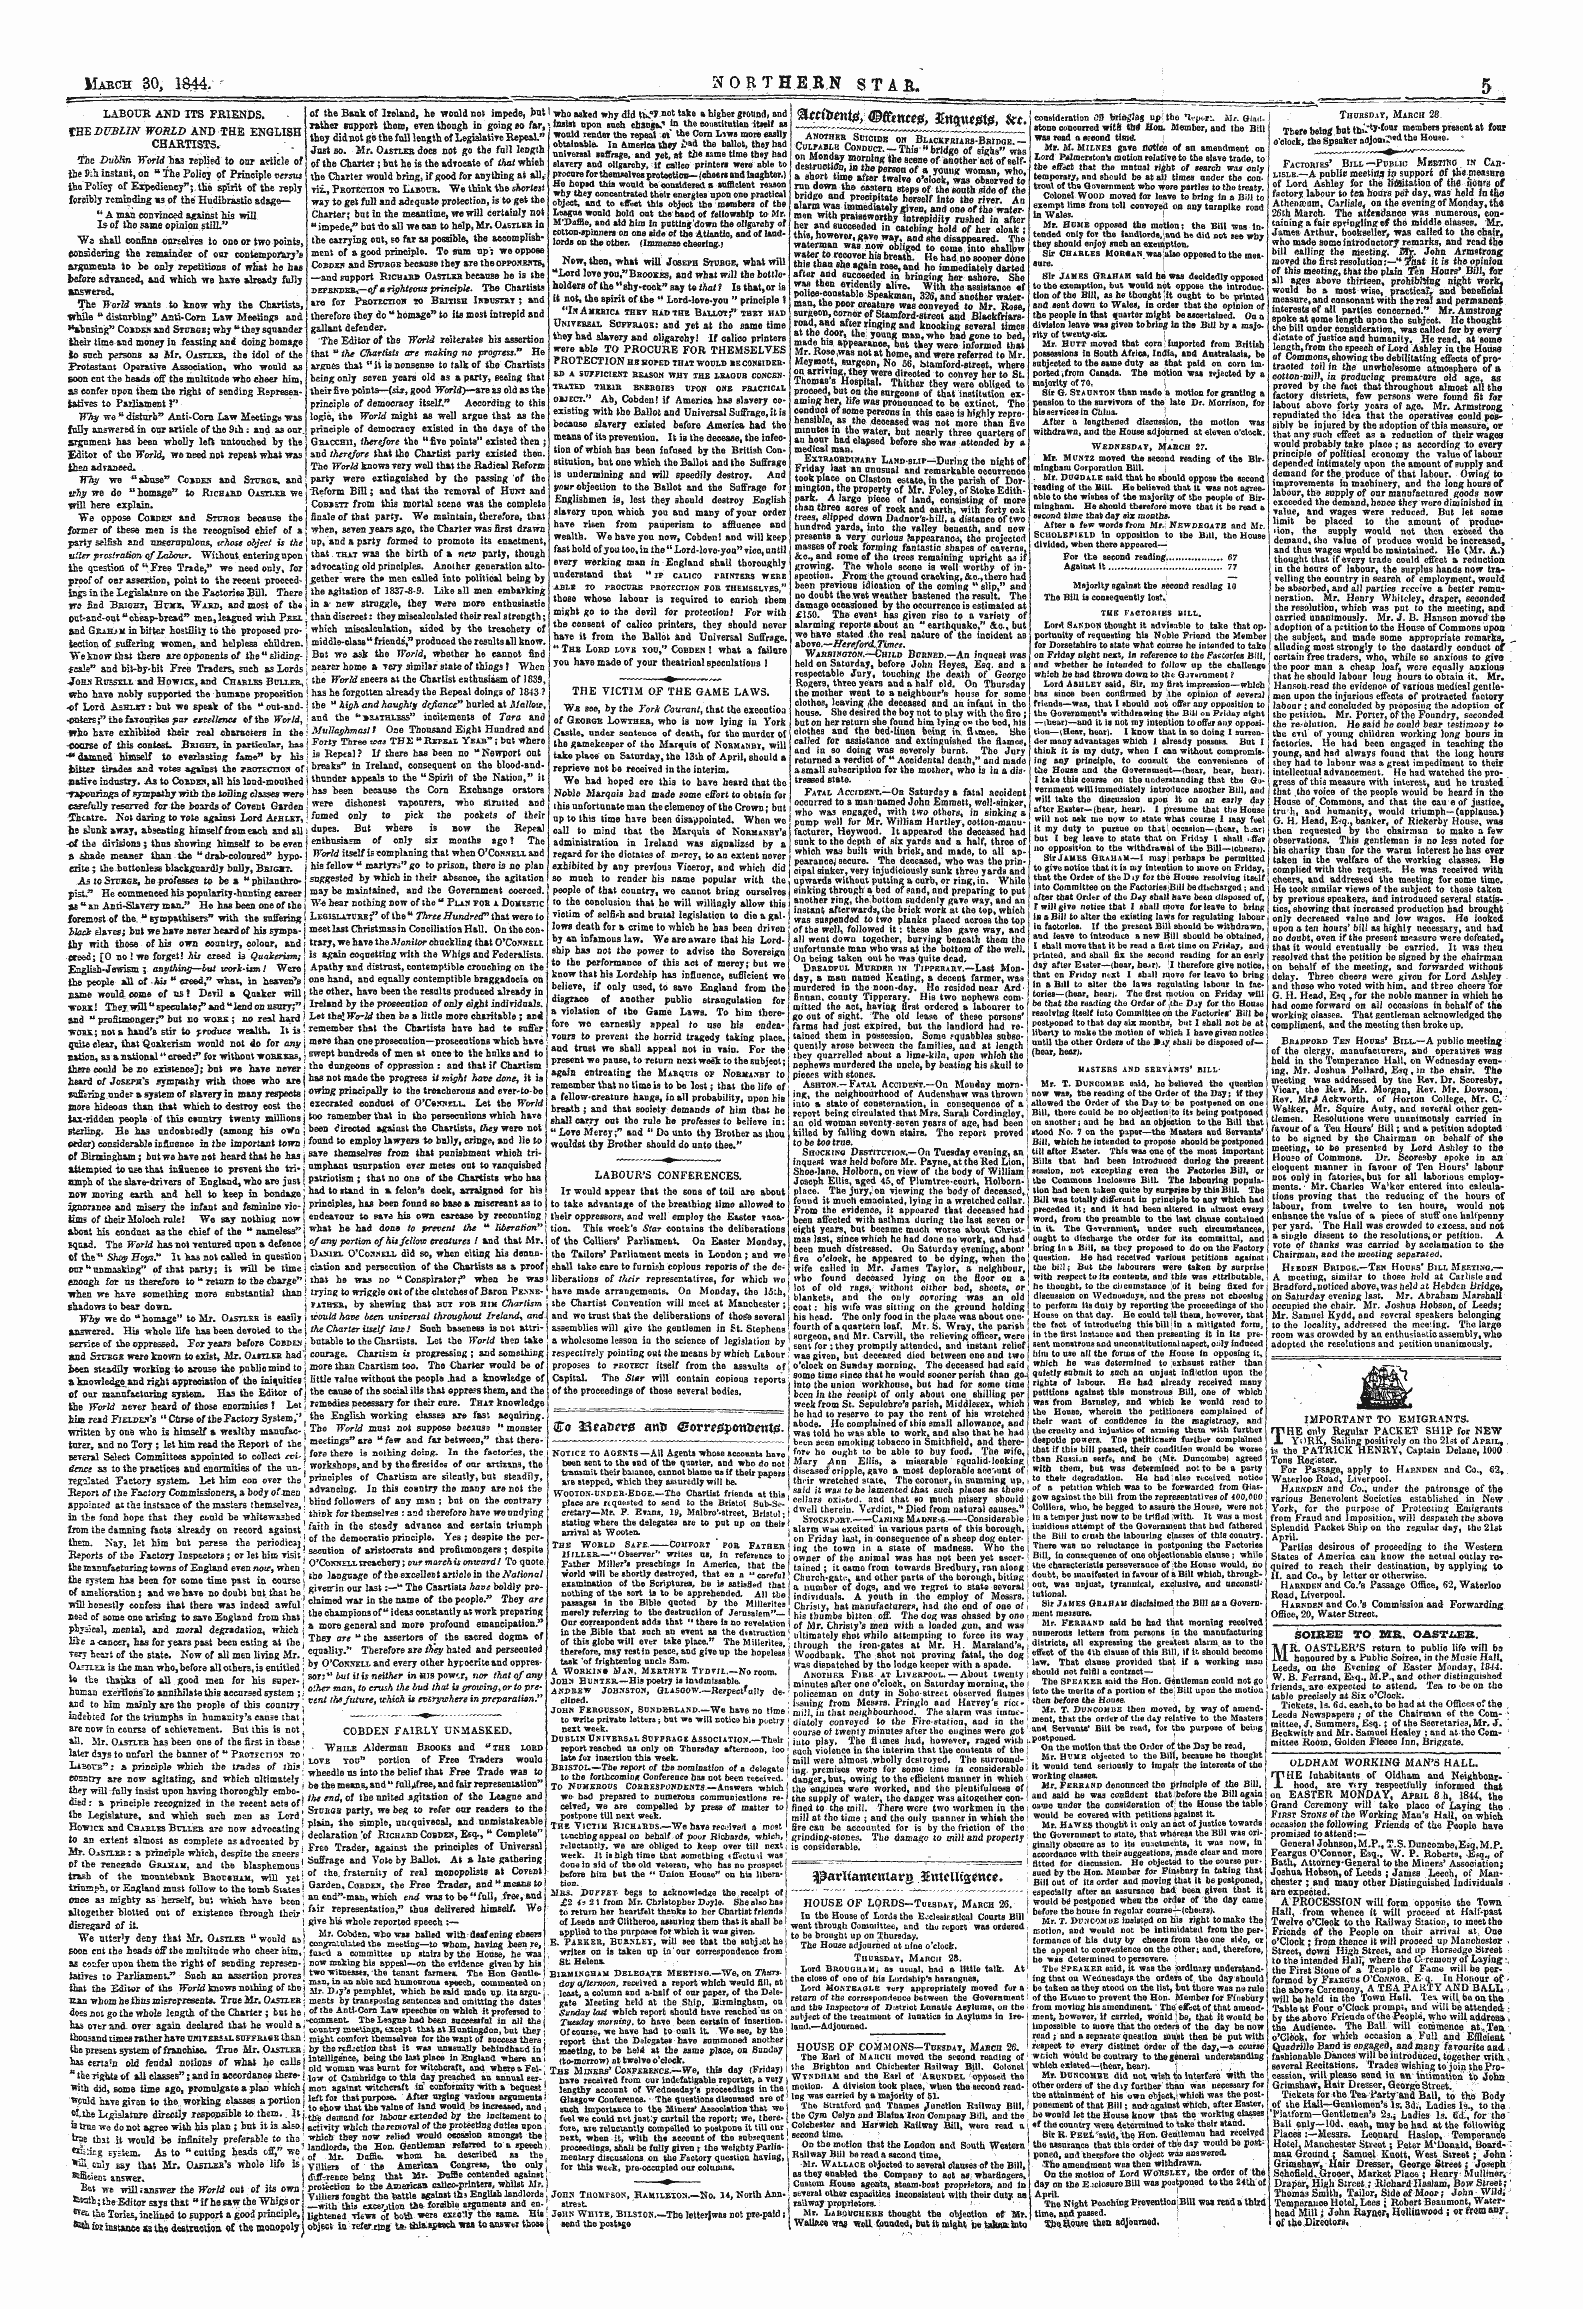 Northern Star (1837-1852): jS F Y, 1st edition - V^Trtfty Mfomt*, Fotau*$I$, &T.